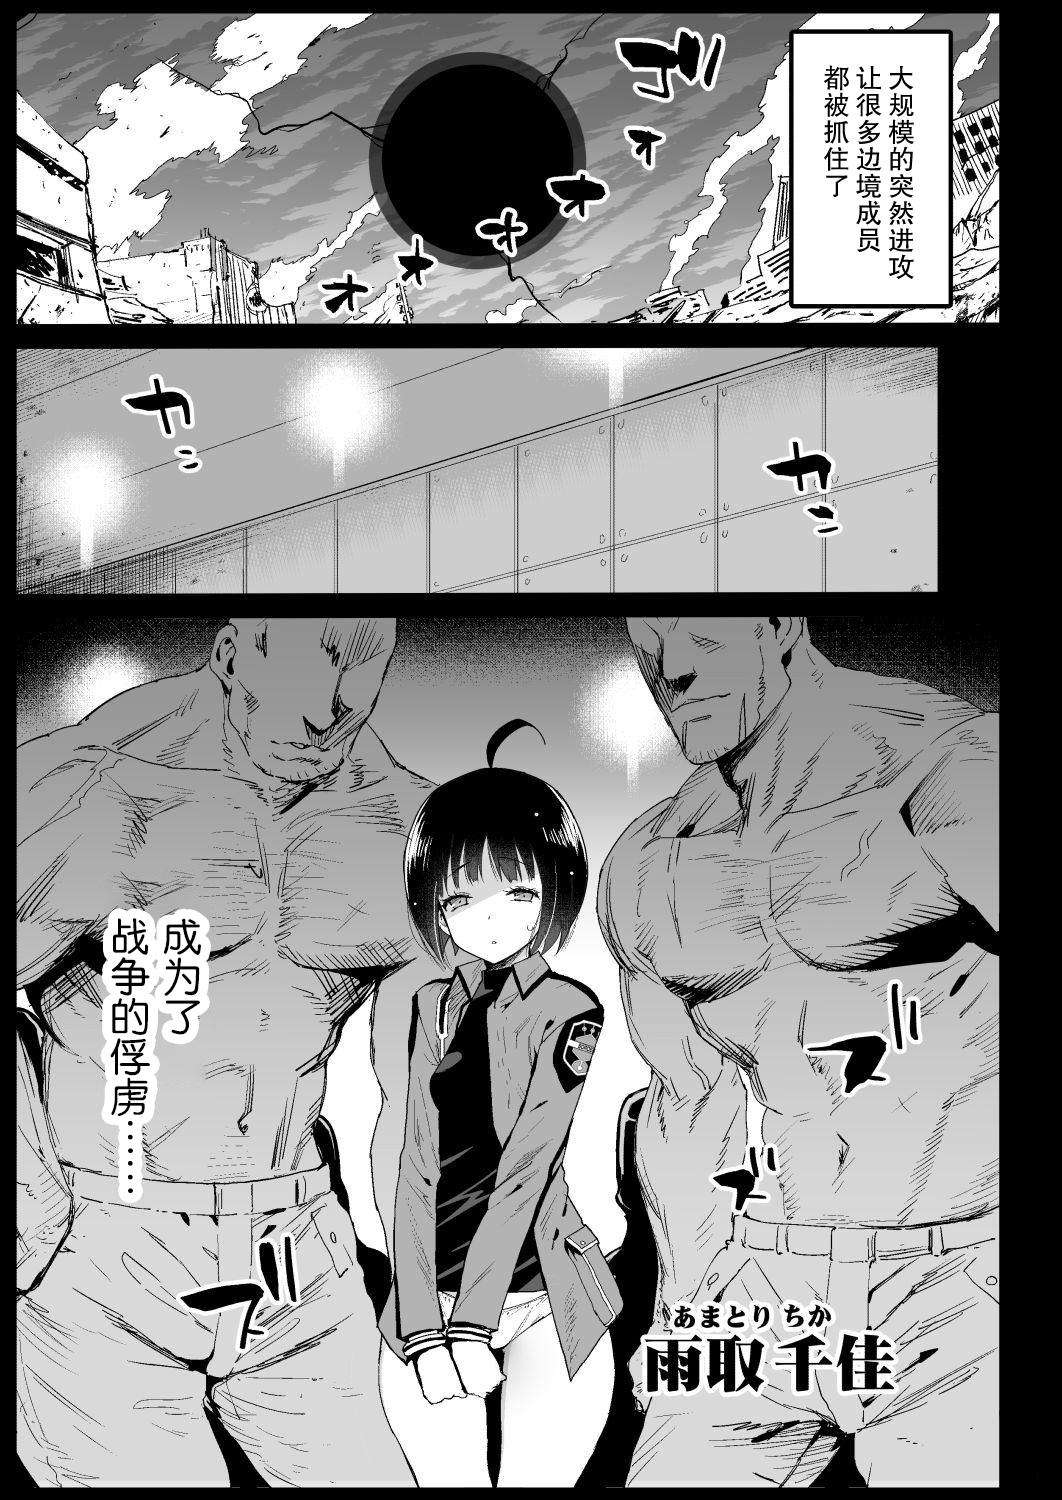 Foreplay Amatori Chika 14 Sai Warui Ossan ni Okasareru! - World trigger Bear - Page 4